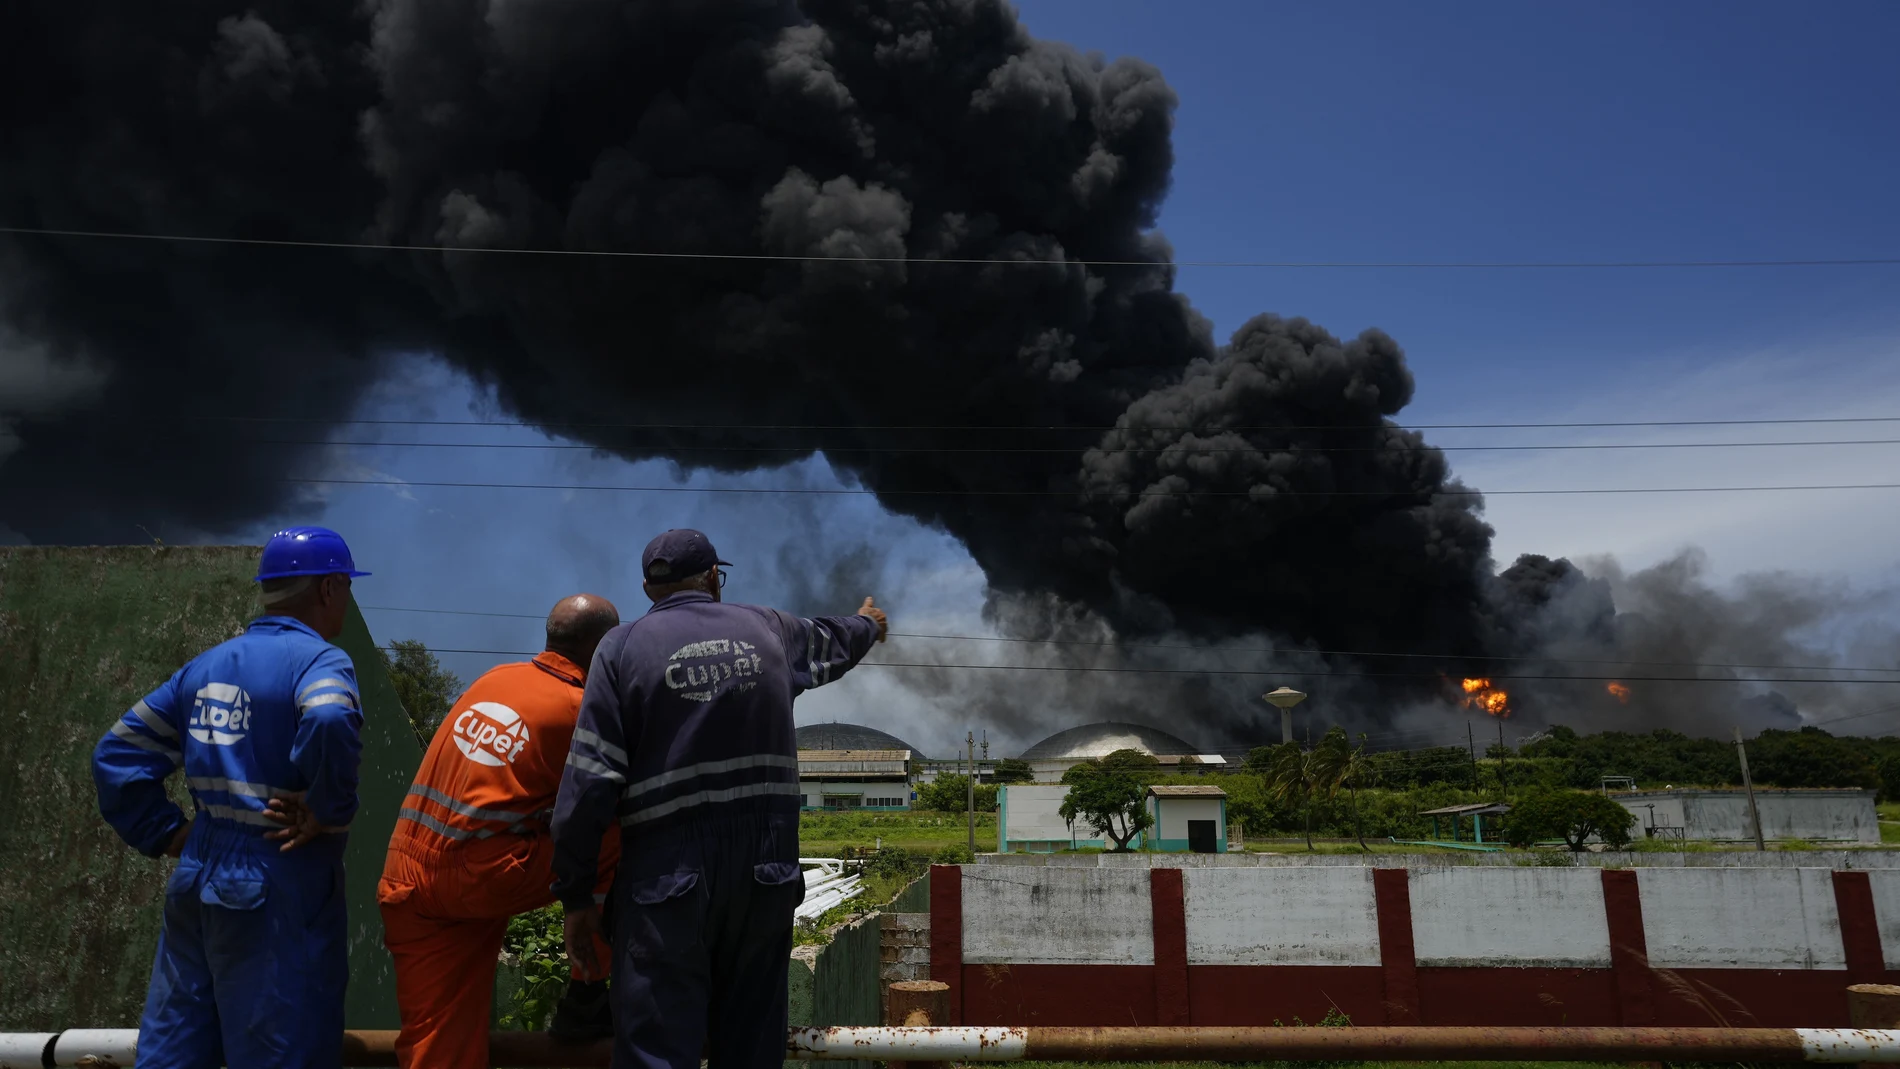 Trabajadores del Sindicato Petrolero de Cuba (CUPET) observan una enorme columna de humo que se eleva desde la Base de Superpetroleros de Matanzas, mientras los bomberos trabajan para sofocar un incendio que comenzó durante una tormenta eléctrica la noche anterior